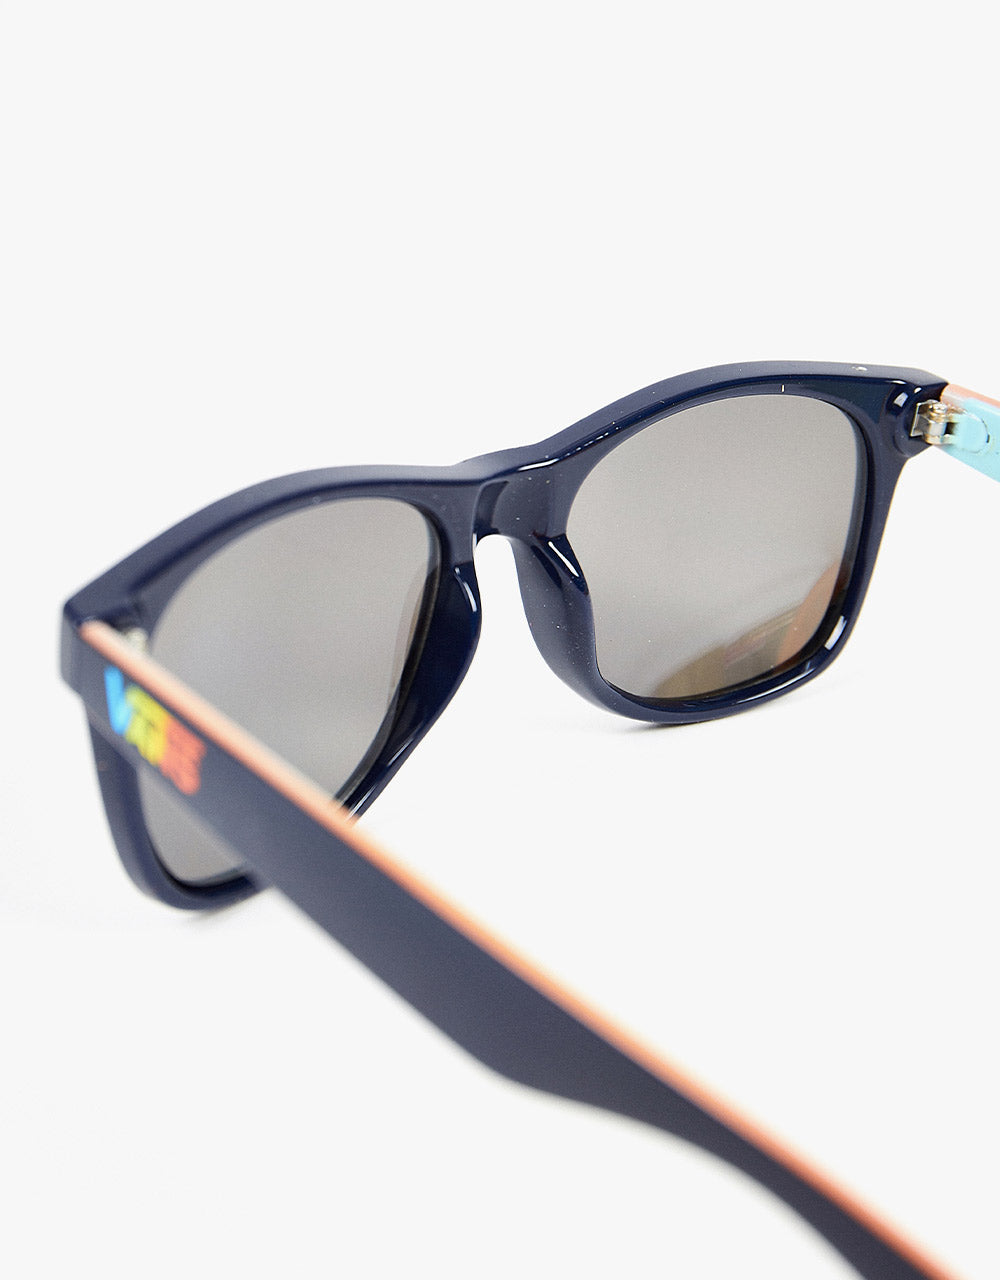 Vans Spicoli 4 Sunglasses - Hi Grade